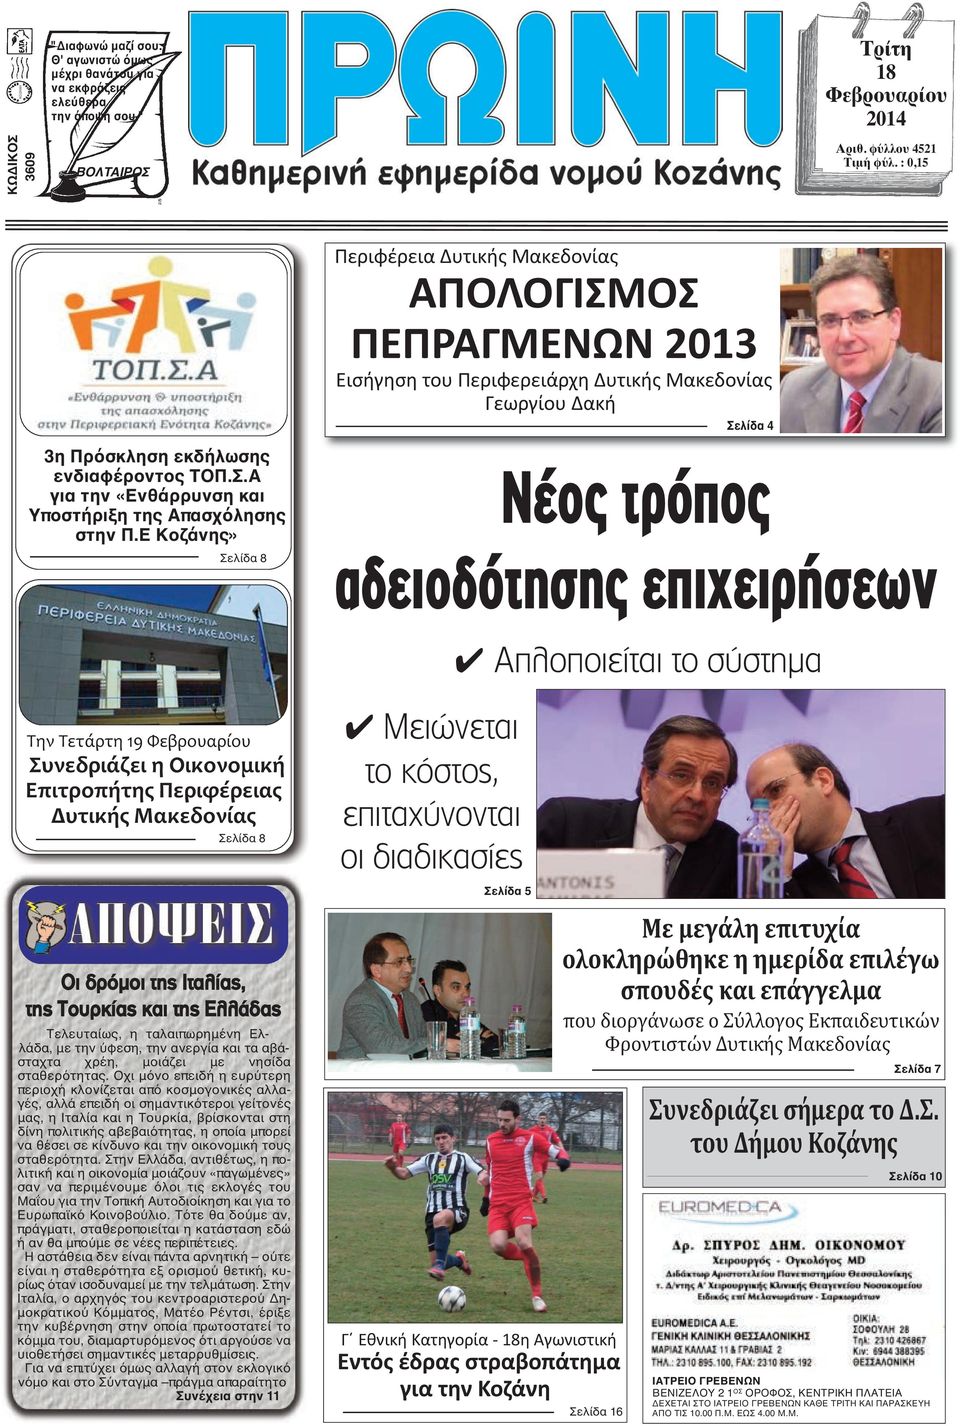 Ε Κοζάνης» Σελίδα 8 Νέος τρόπος αδειοδότησης επιχειρήσεων 4 Απλοποιείται το σύστημα Την Τετάρτη 19 Φεβρουαρίου Συνεδριάζει η Οικονομική Επιτροπήτης Περιφέρειας Δυτικής Μακεδονίας Σελίδα 8 4 Μειώνεται